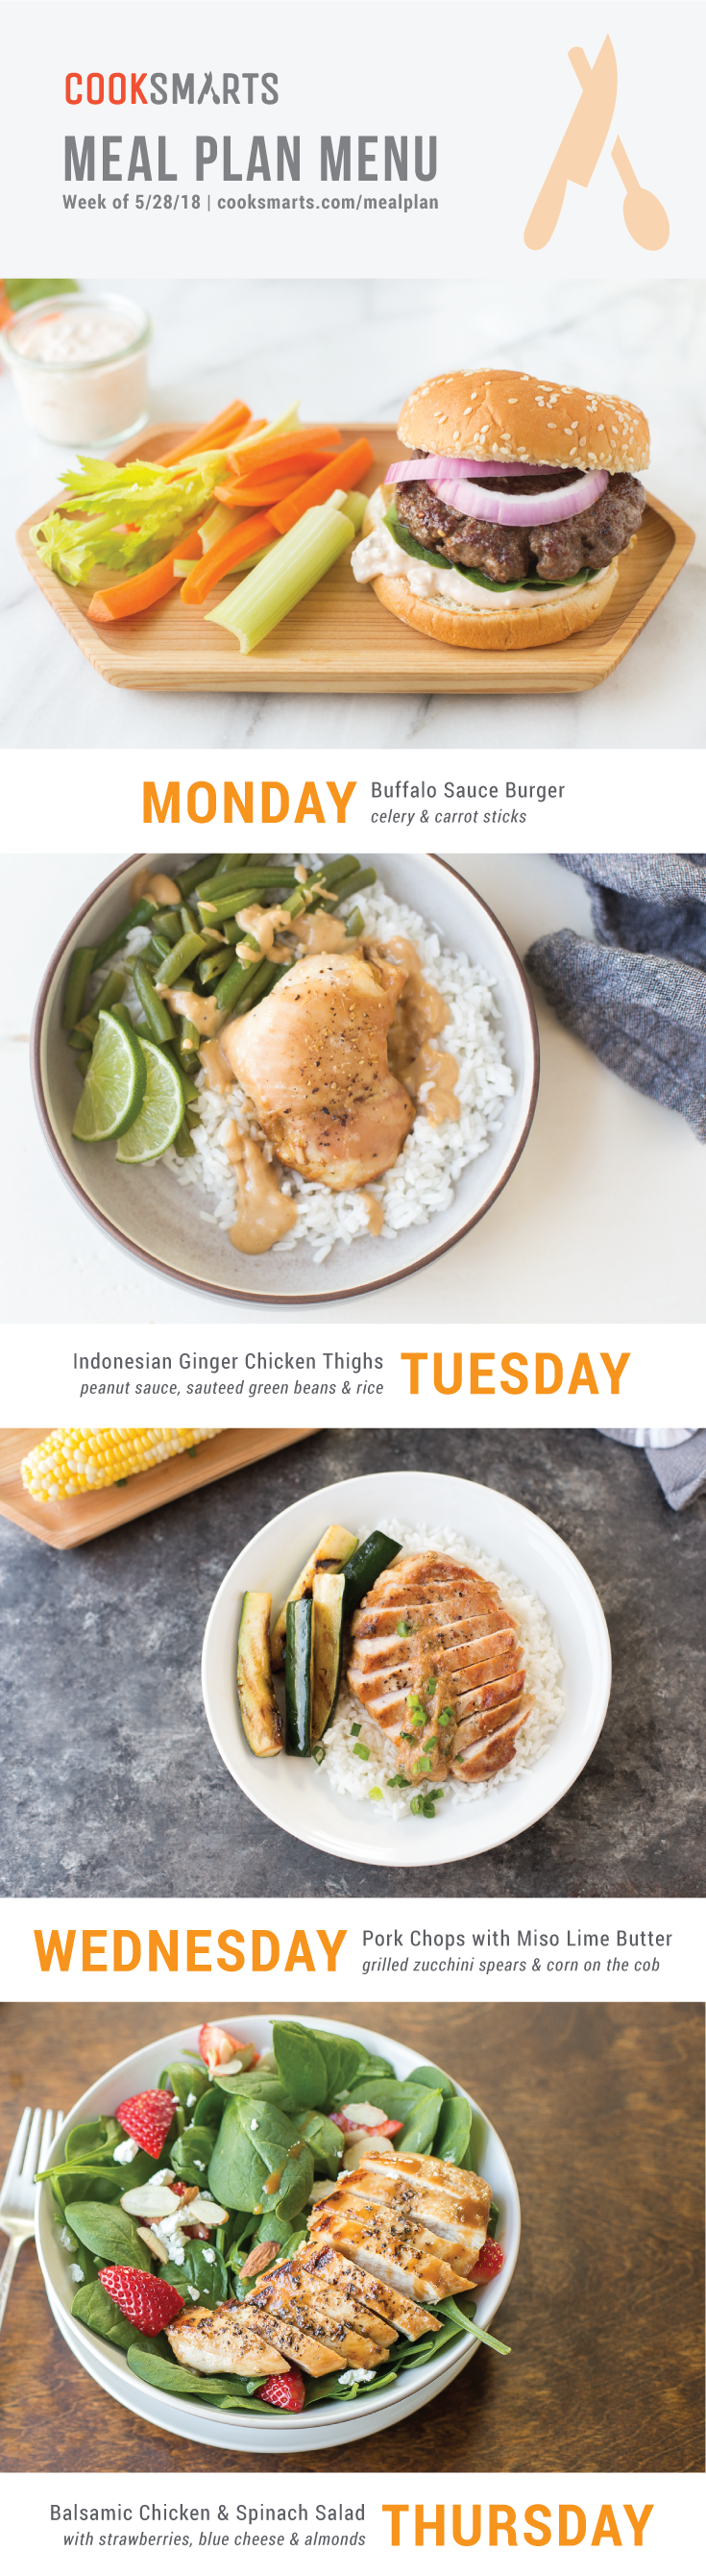 Weekly Meal Planner | Menu for Week of 5/28/18 via Cook Smarts